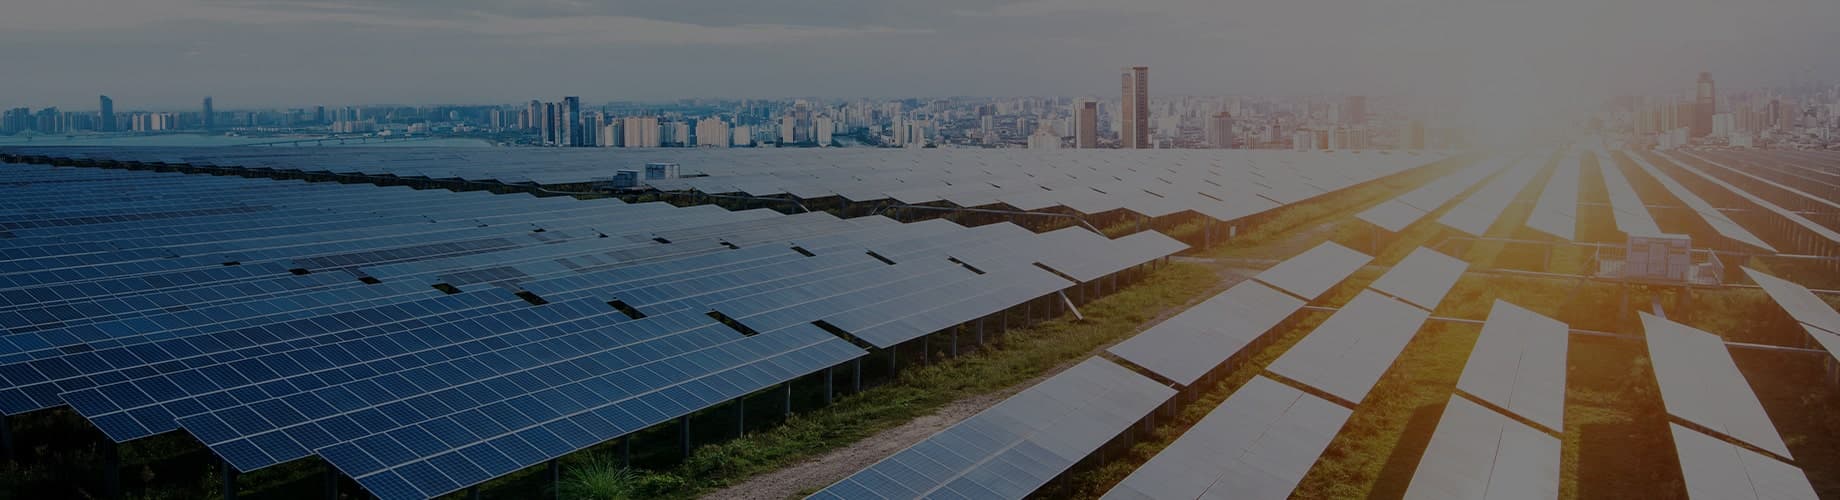 Solar Panels In An Industrial Open Field